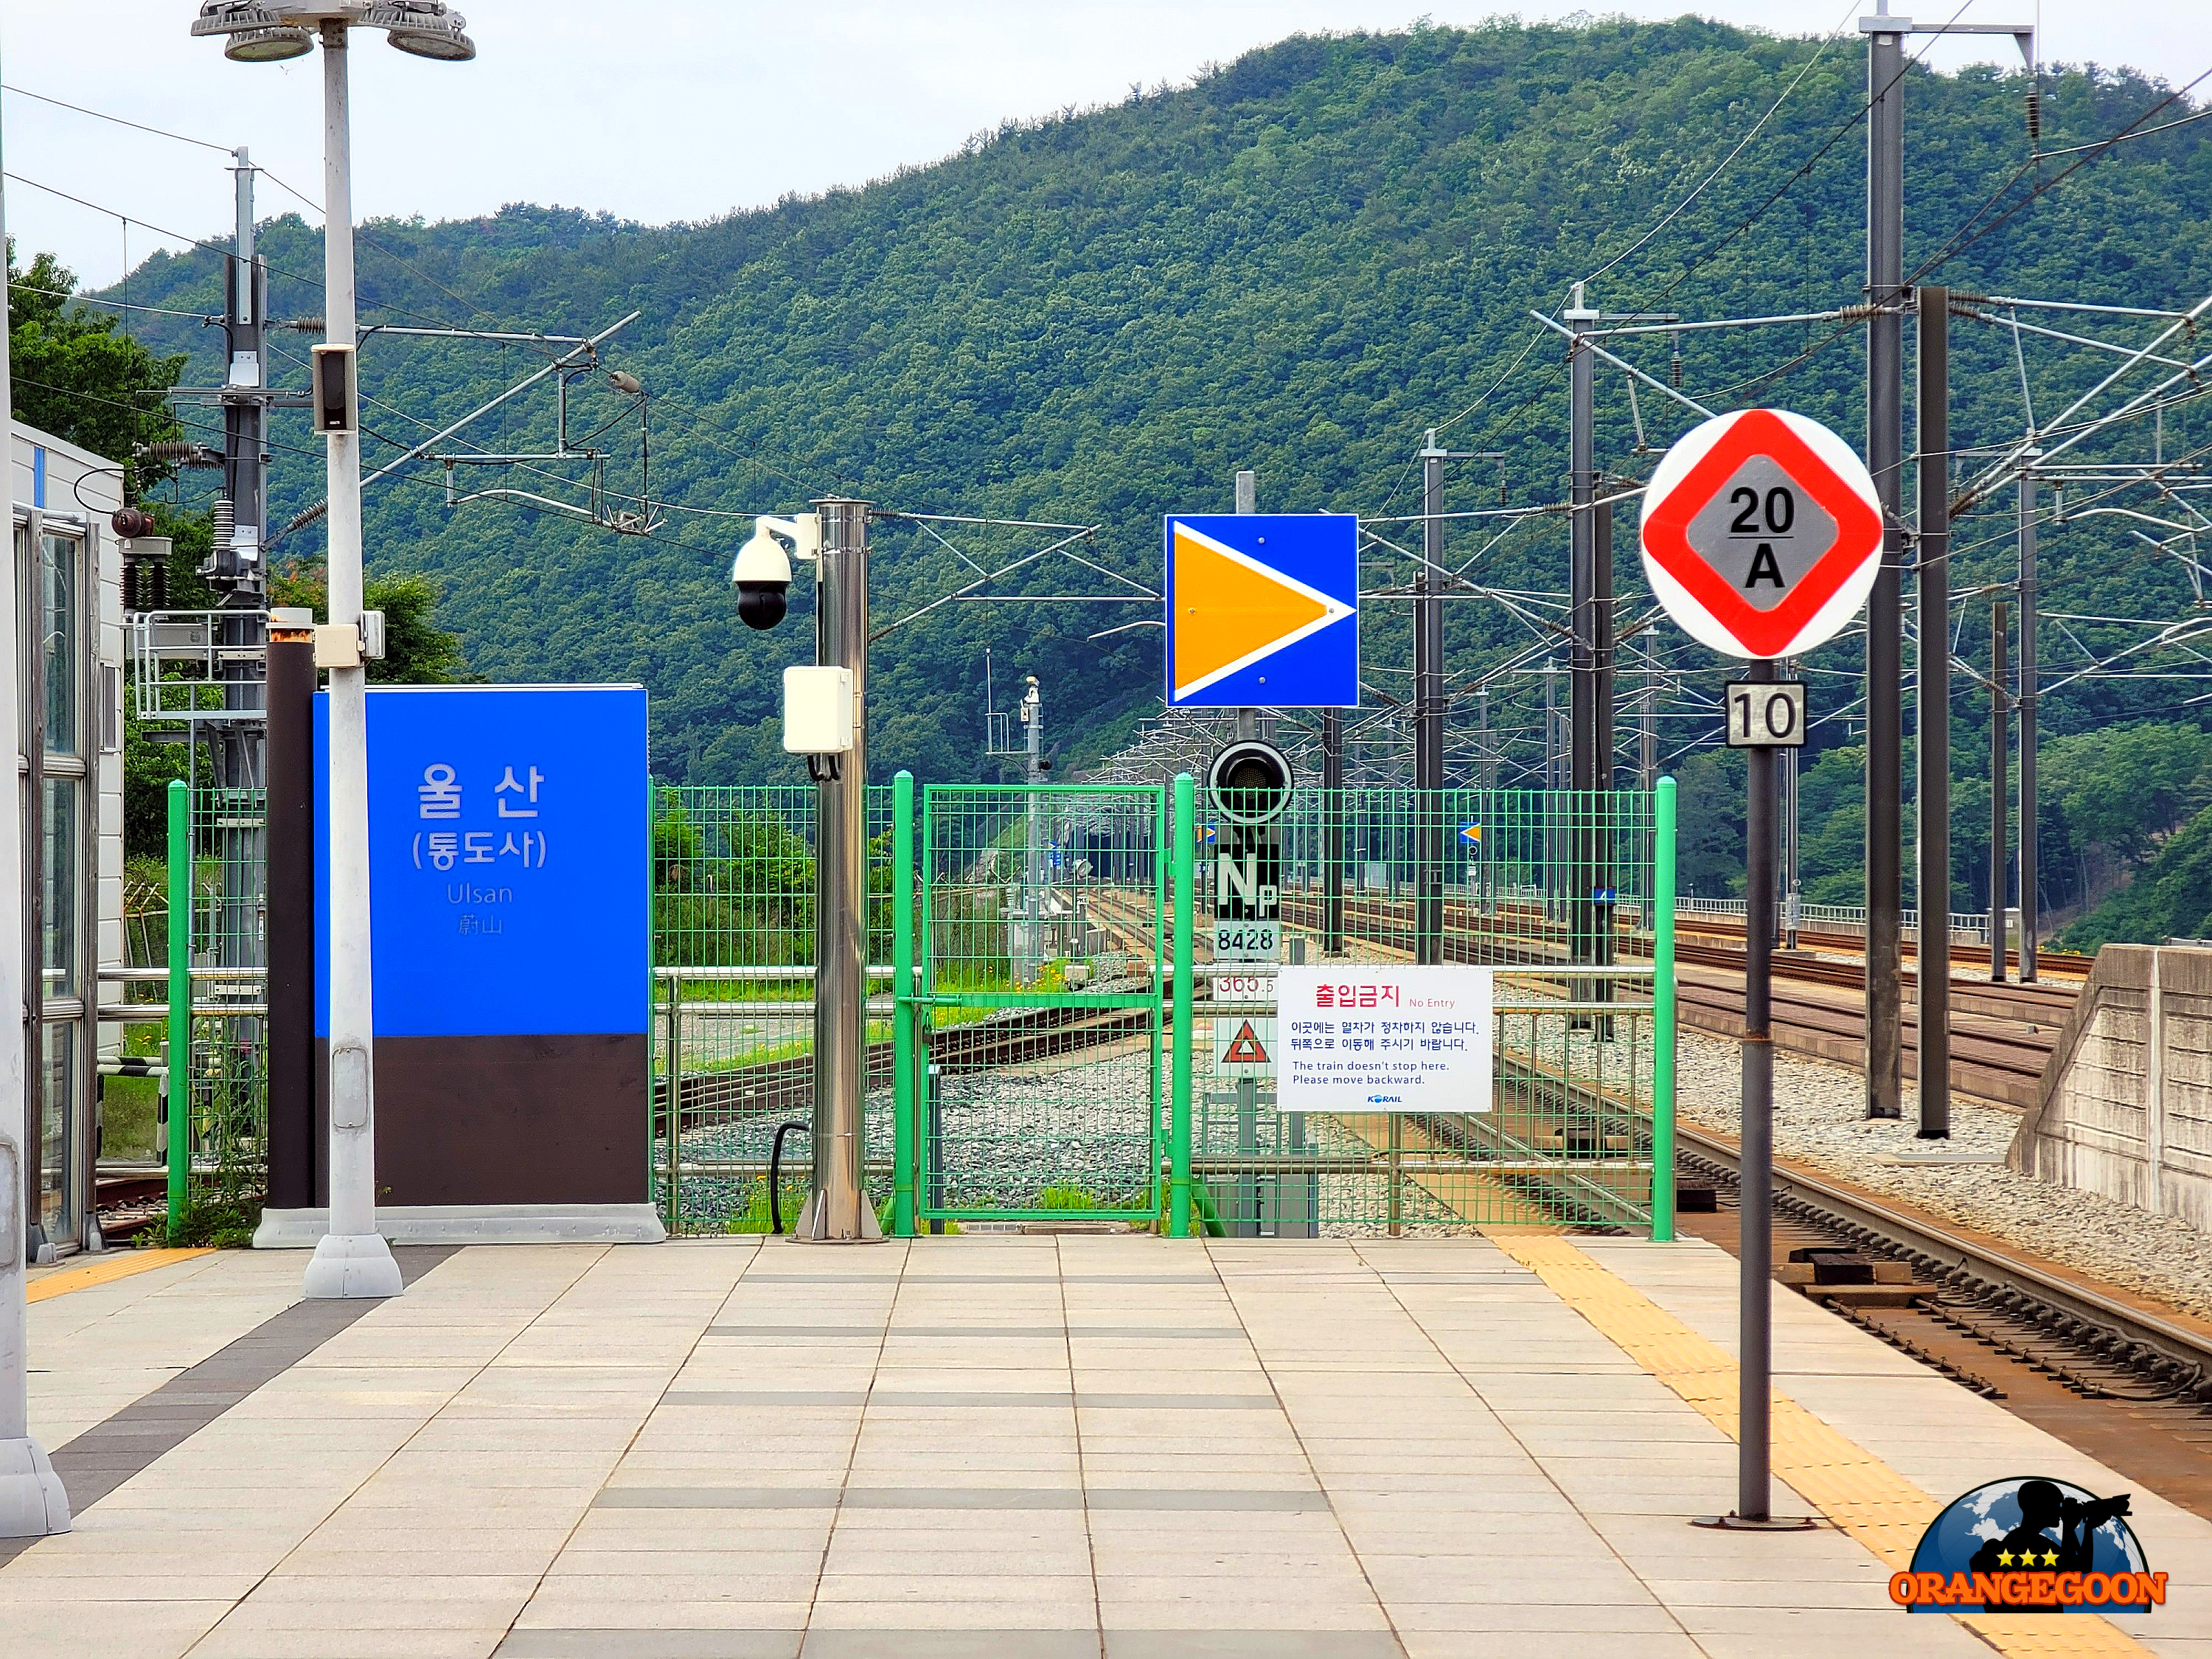 (울산 울주 / 울산역 - 통도사) 통도사도 멀고, 울산도 멀고. 하지만 묘하게도 승객이 많은 울산의 대표 기차역 蔚山驛 Ulsan Railway Station